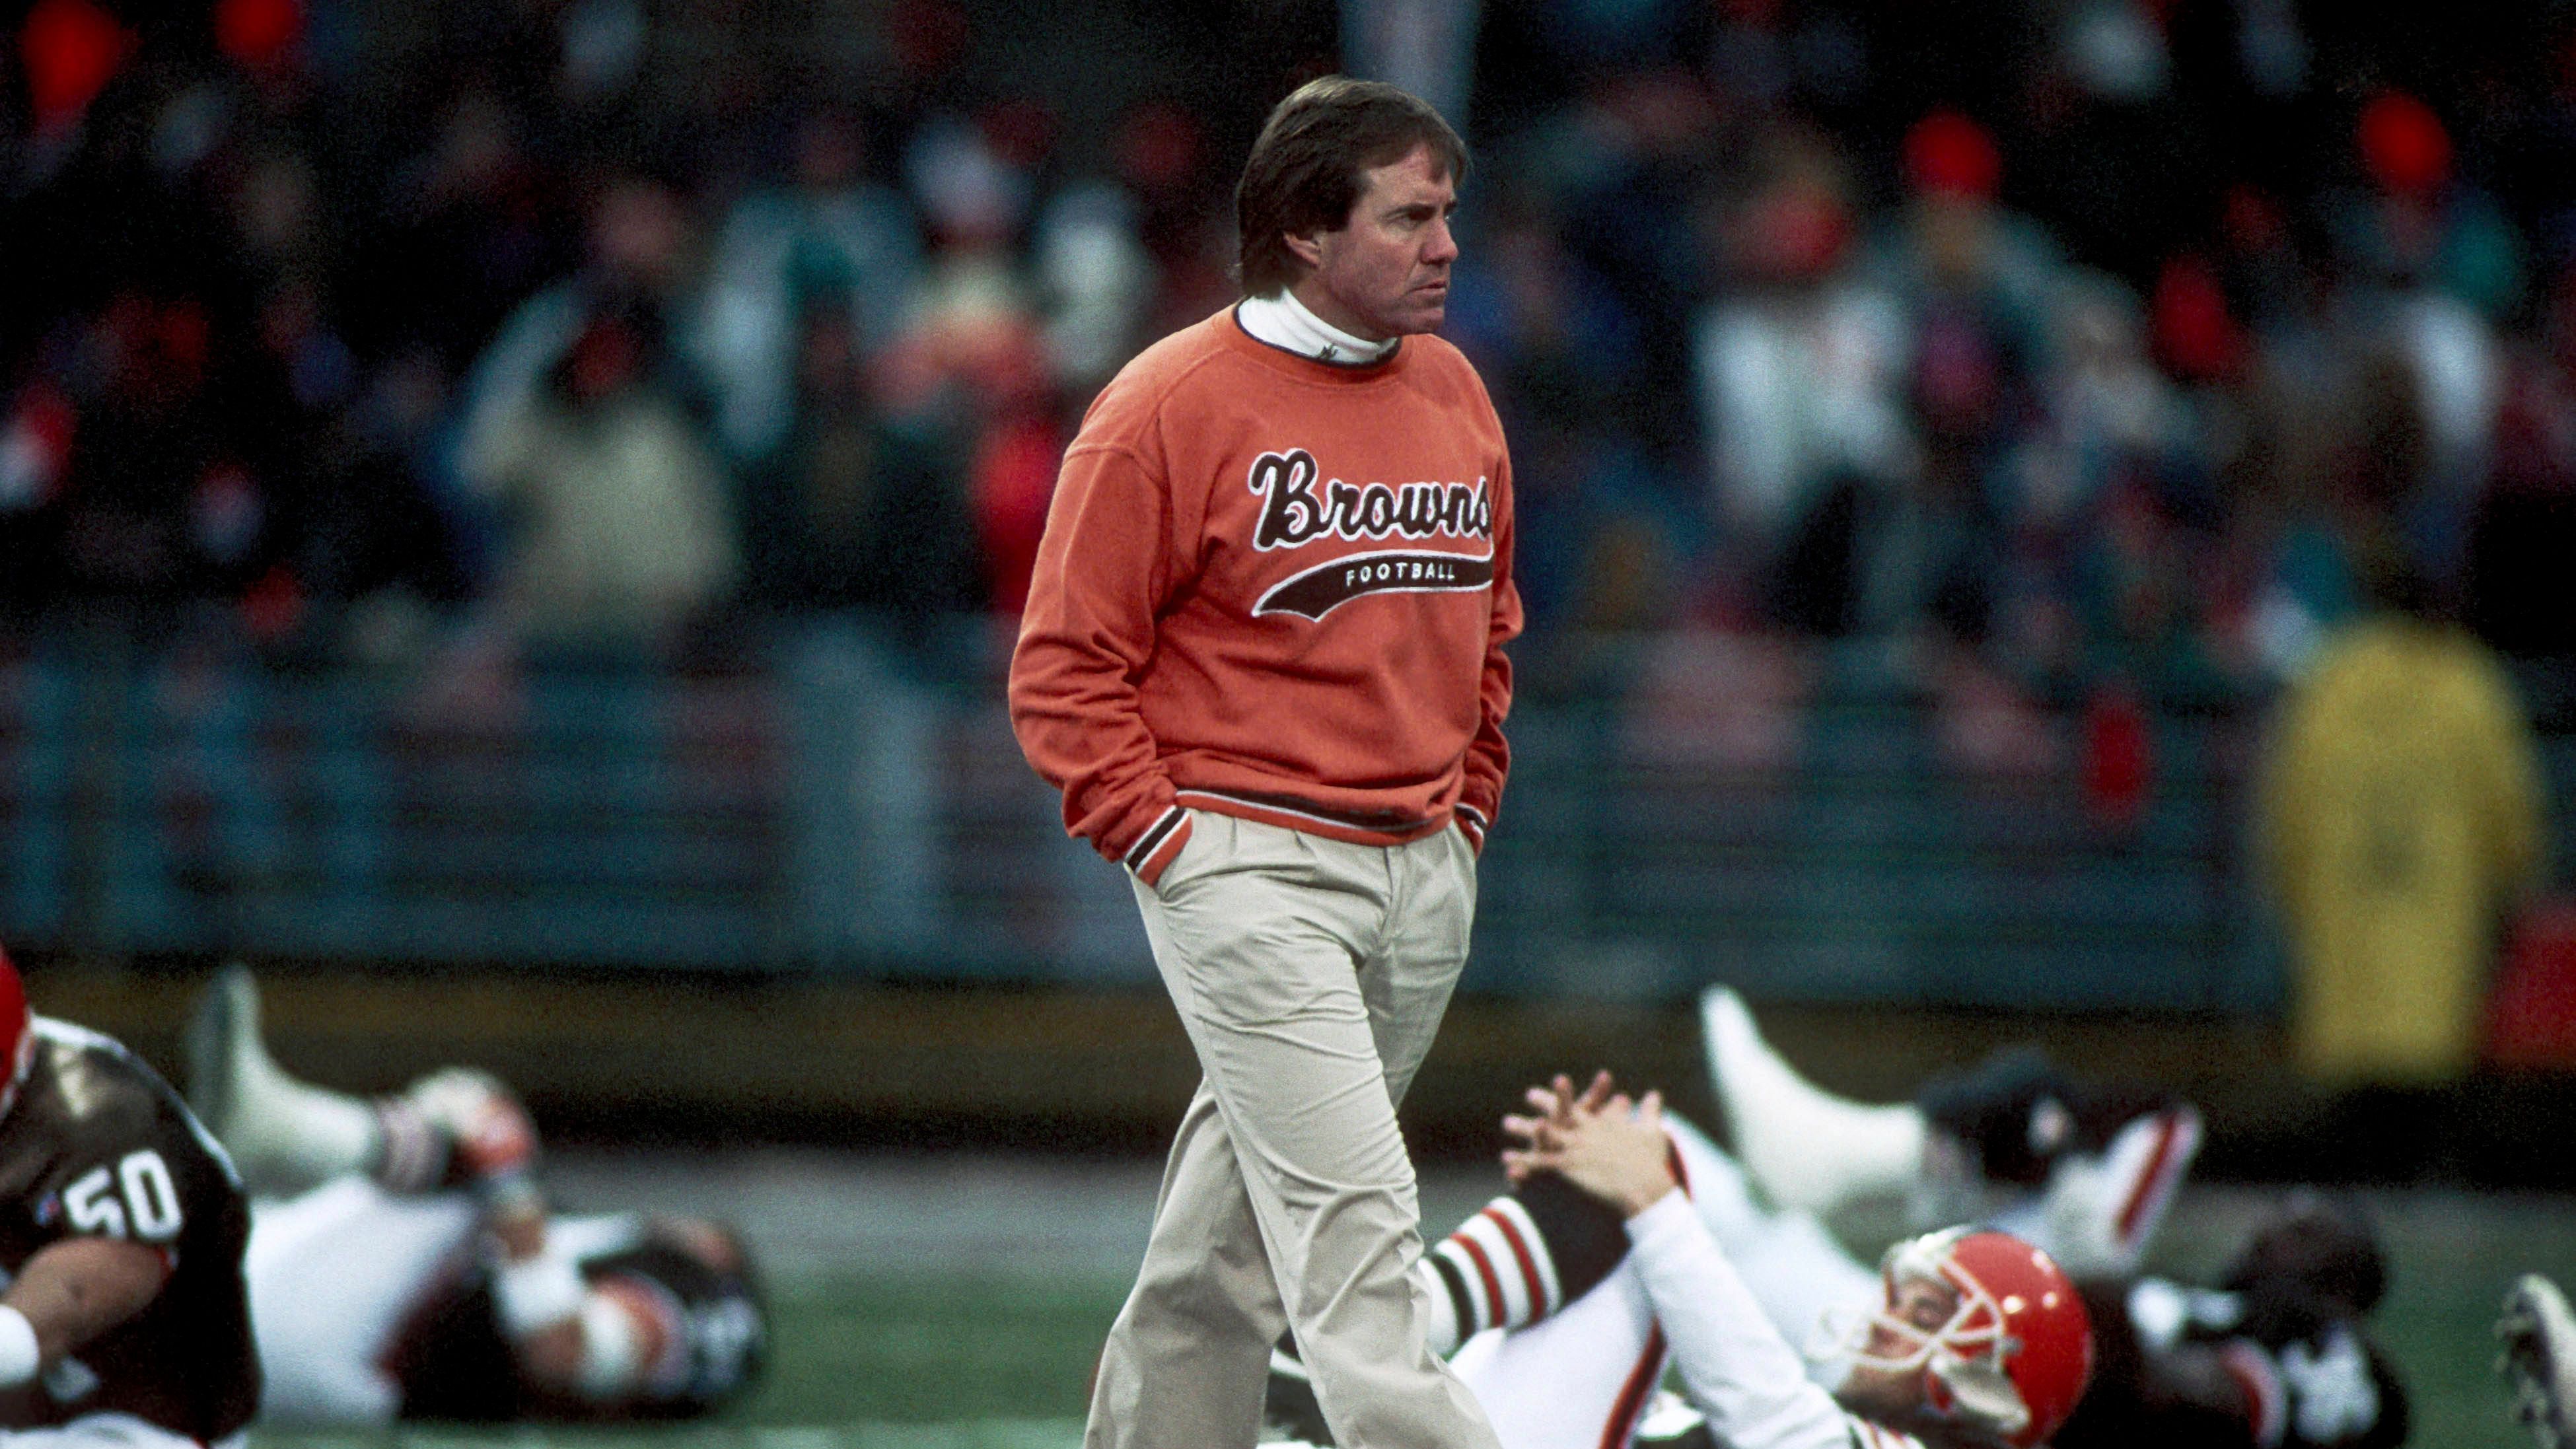 <strong>1991 - Head Coach Cleveland Browns<br></strong>Nach der erfolgreichen Periode in New York wurden die Cleveland Browns aufmerksam auf Belichick und machten ihn zum Head Coach. Die Zeit verlief allerdings mäßig erfolgreich mit einem 36-44-Record. Einzig 1994 konnten die Playoffs erreicht werden.